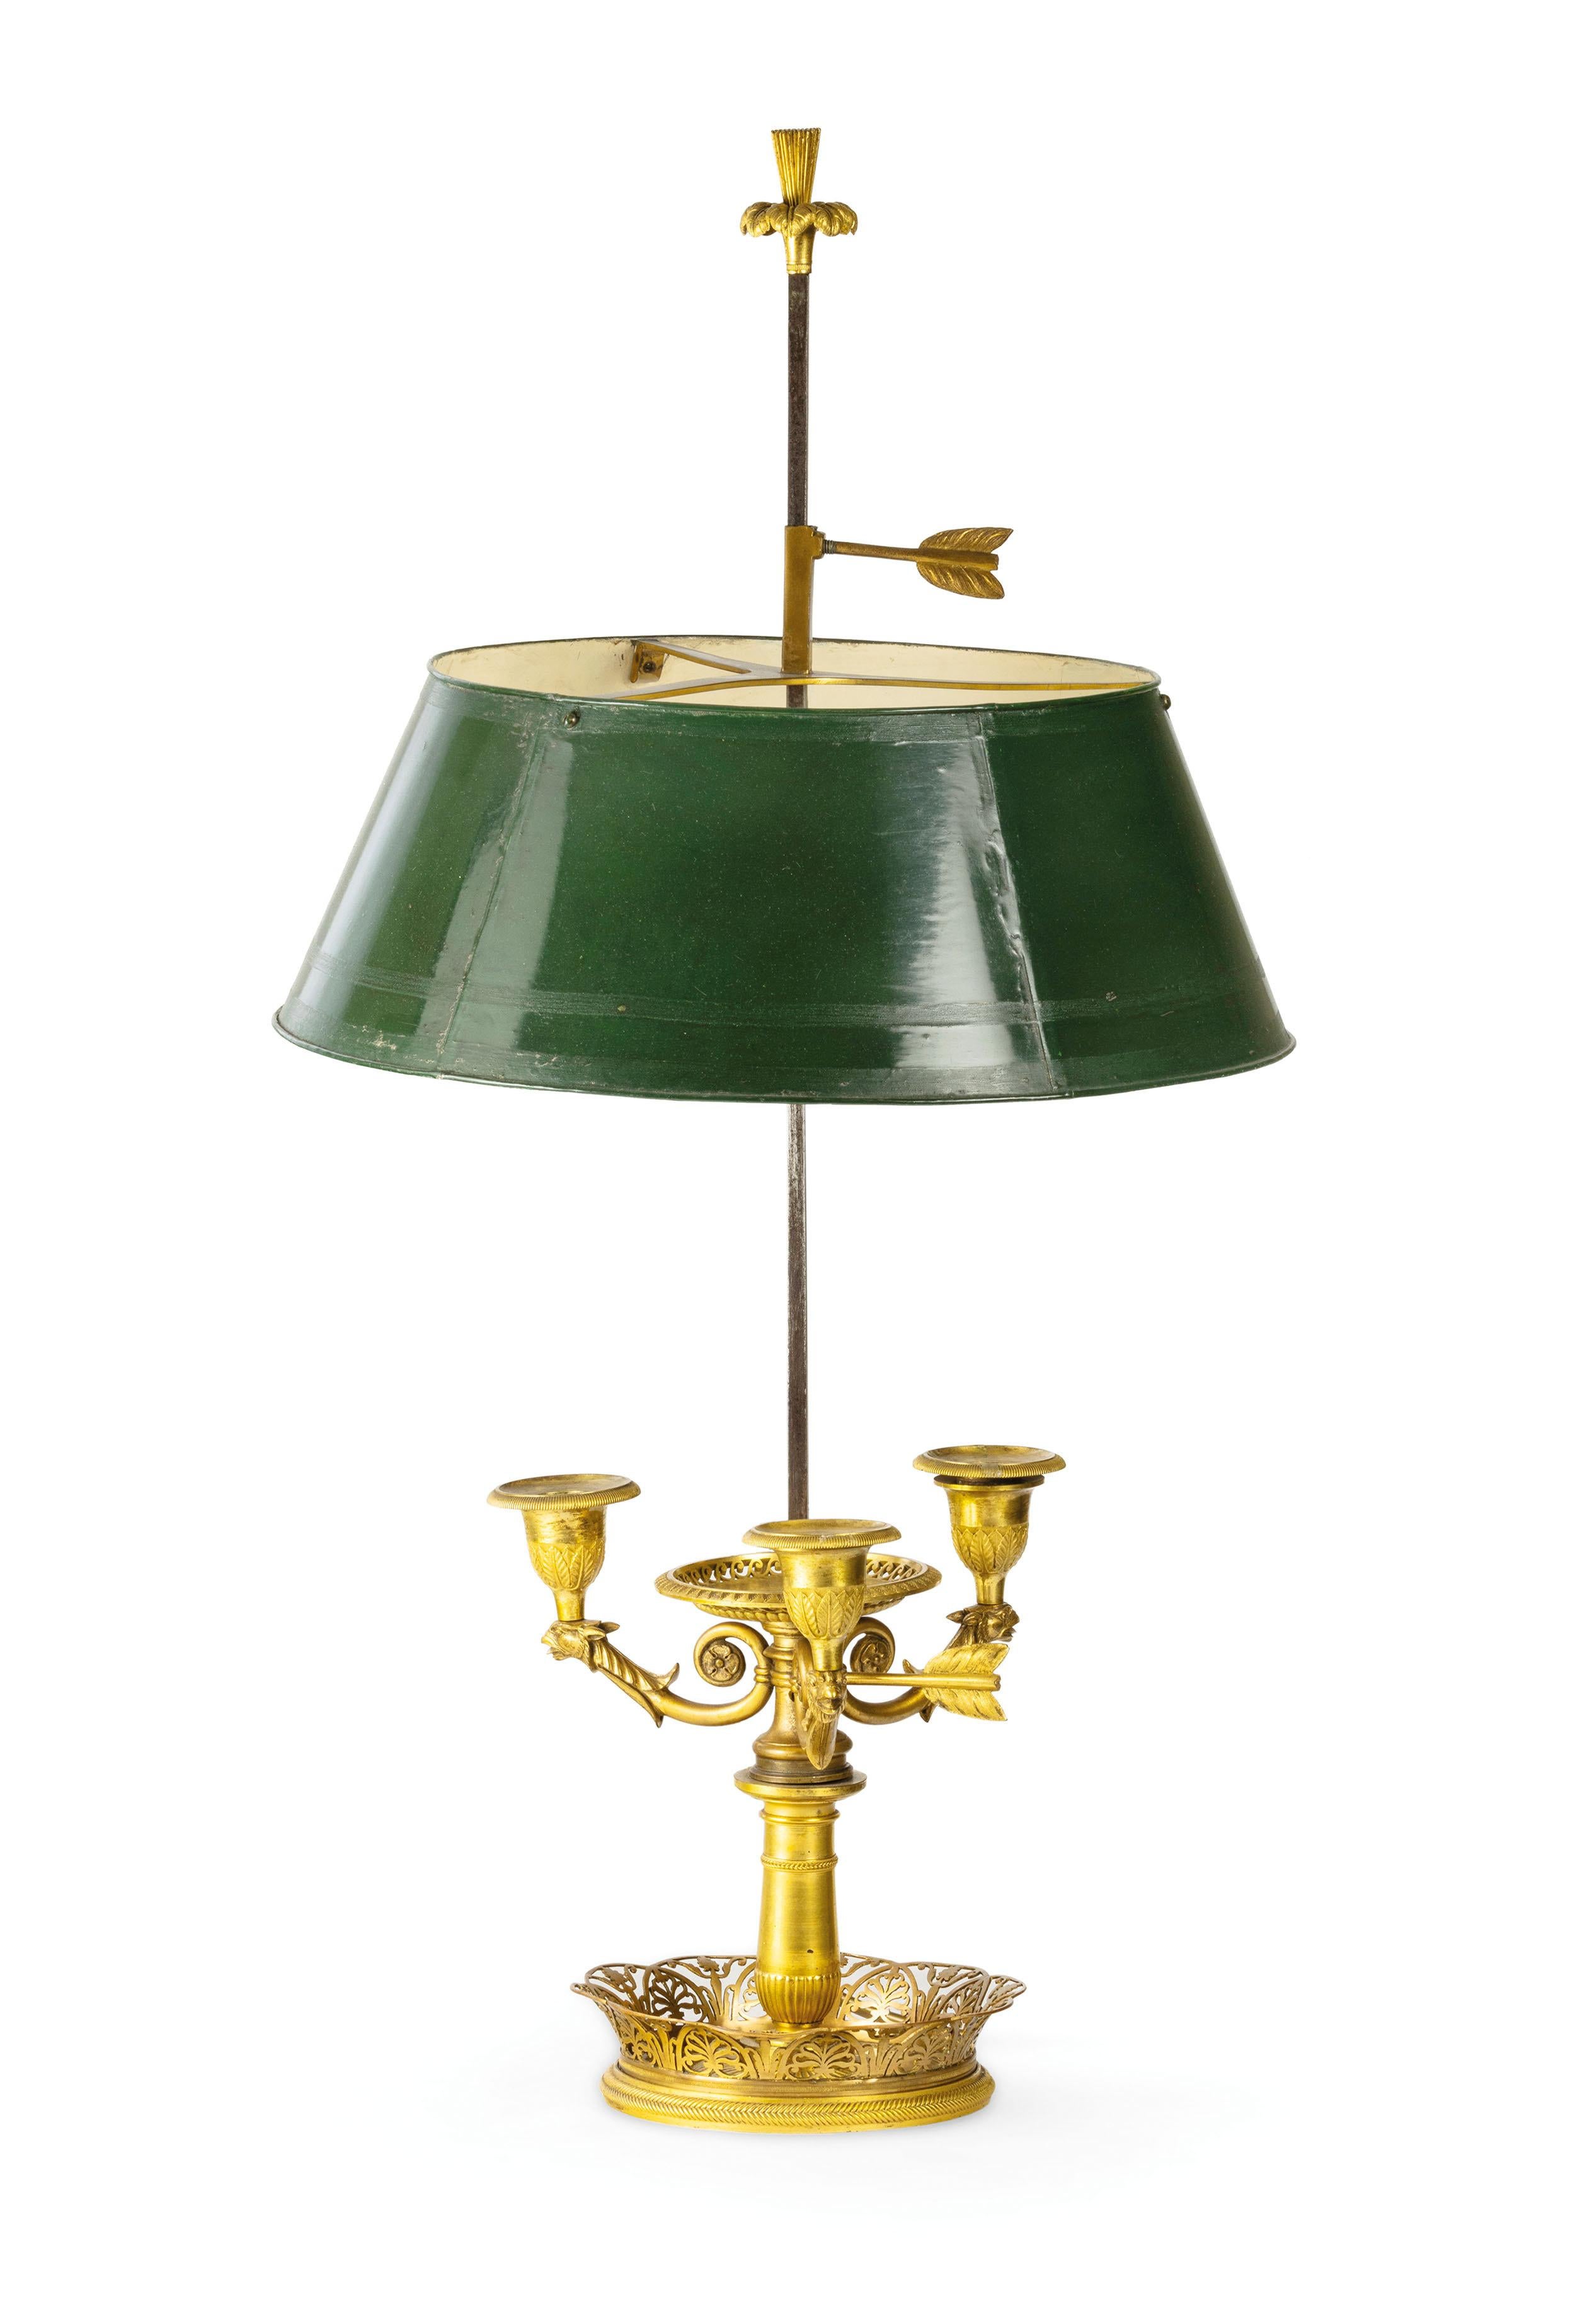 Lampe Buillotte en bronze doré, France, 19e siècle 
Cette élégante lampe de table modèle buillotte a été fabriquée en France au début du XIXe siècle, de goût classique avec des éléments décoratifs Empire. La structure est en bronze finement ciselé